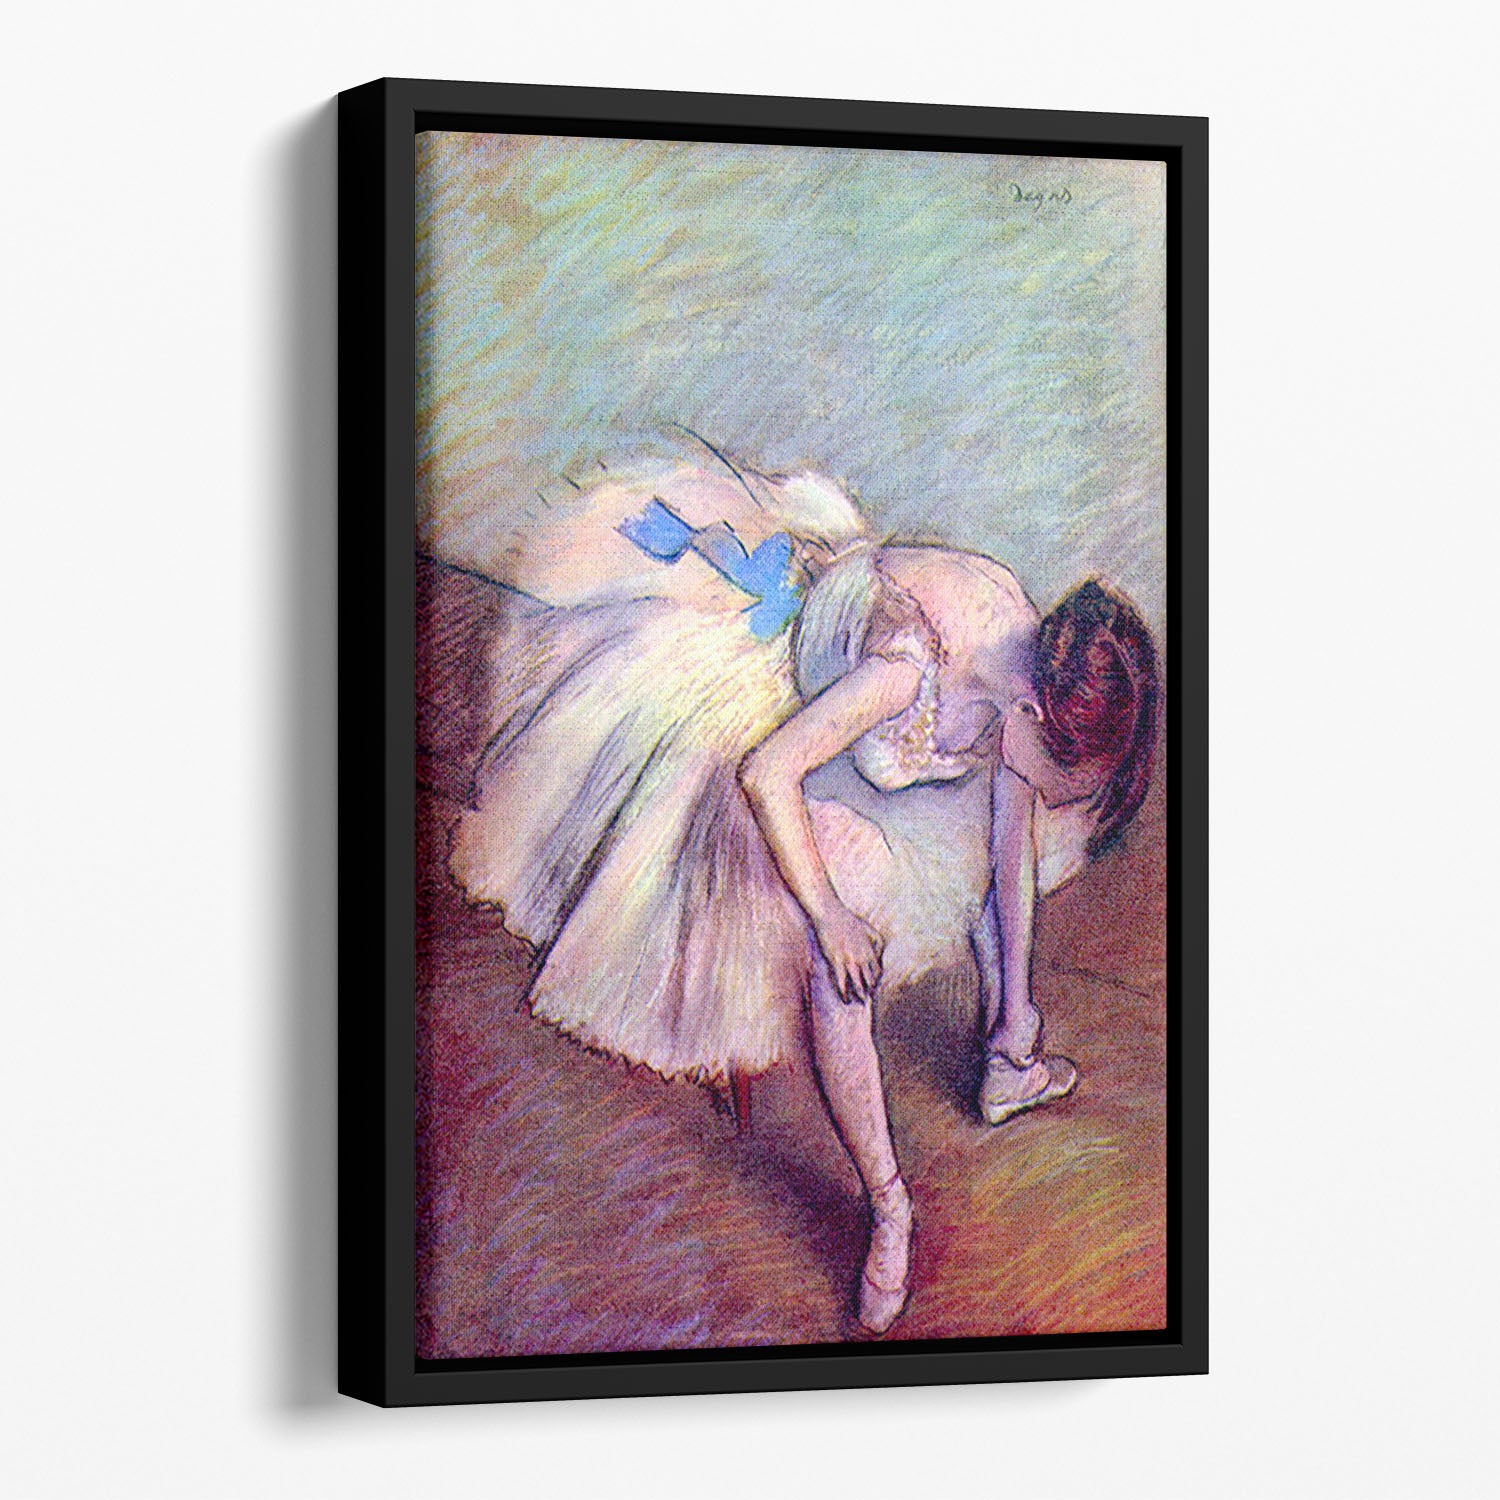 Dancer 2 by Degas Floating Framed Canvas